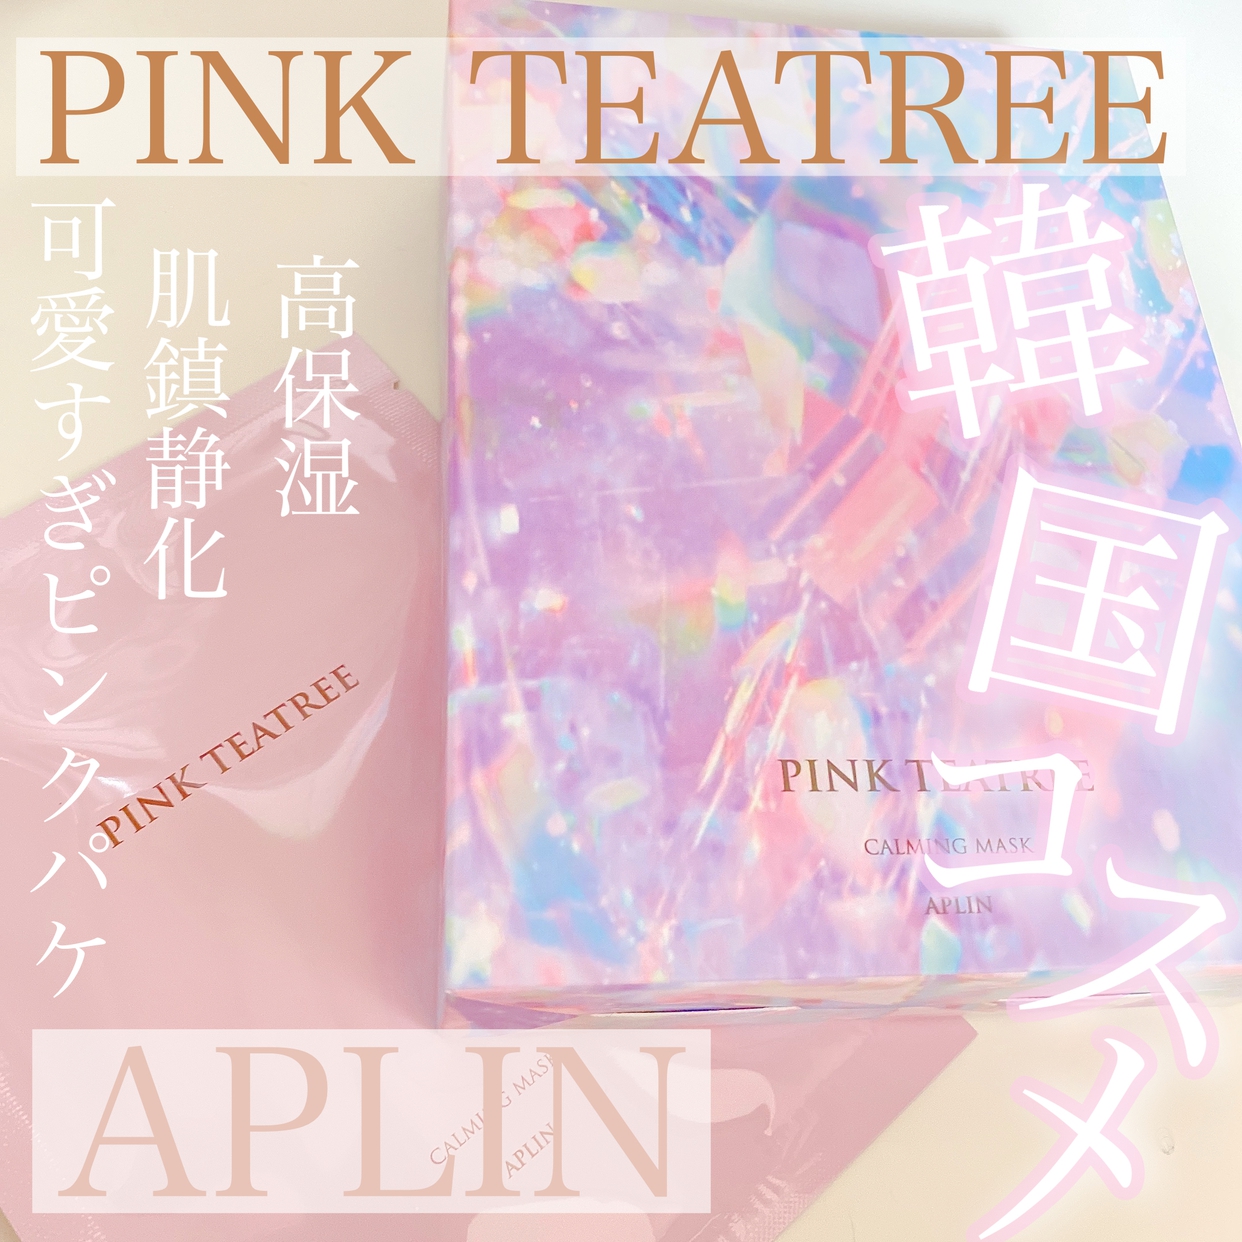 APLIN(アプリン) ピンクティーツリーマスクパックを使ったOLちゃんさんのクチコミ画像1